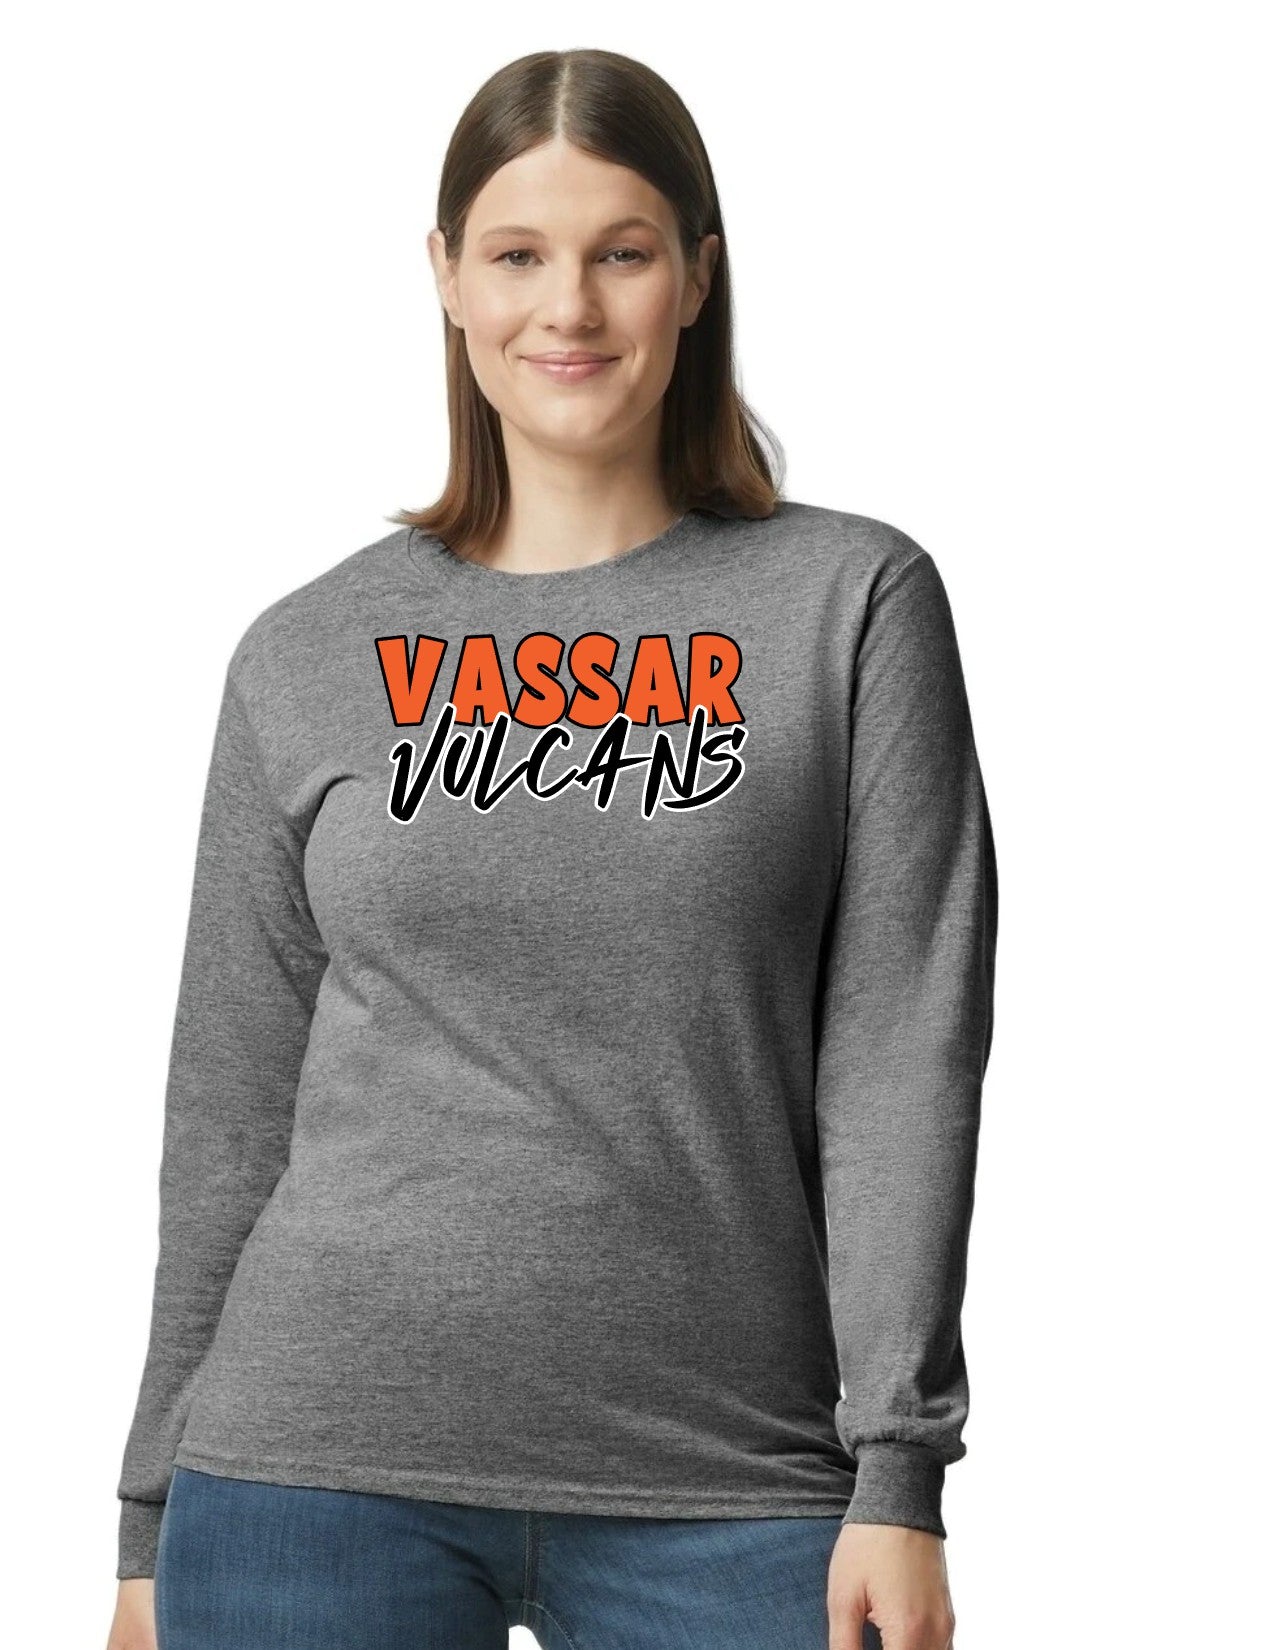 Vassar Vulcans Long Sleeve T-shirt unisex (Adult)